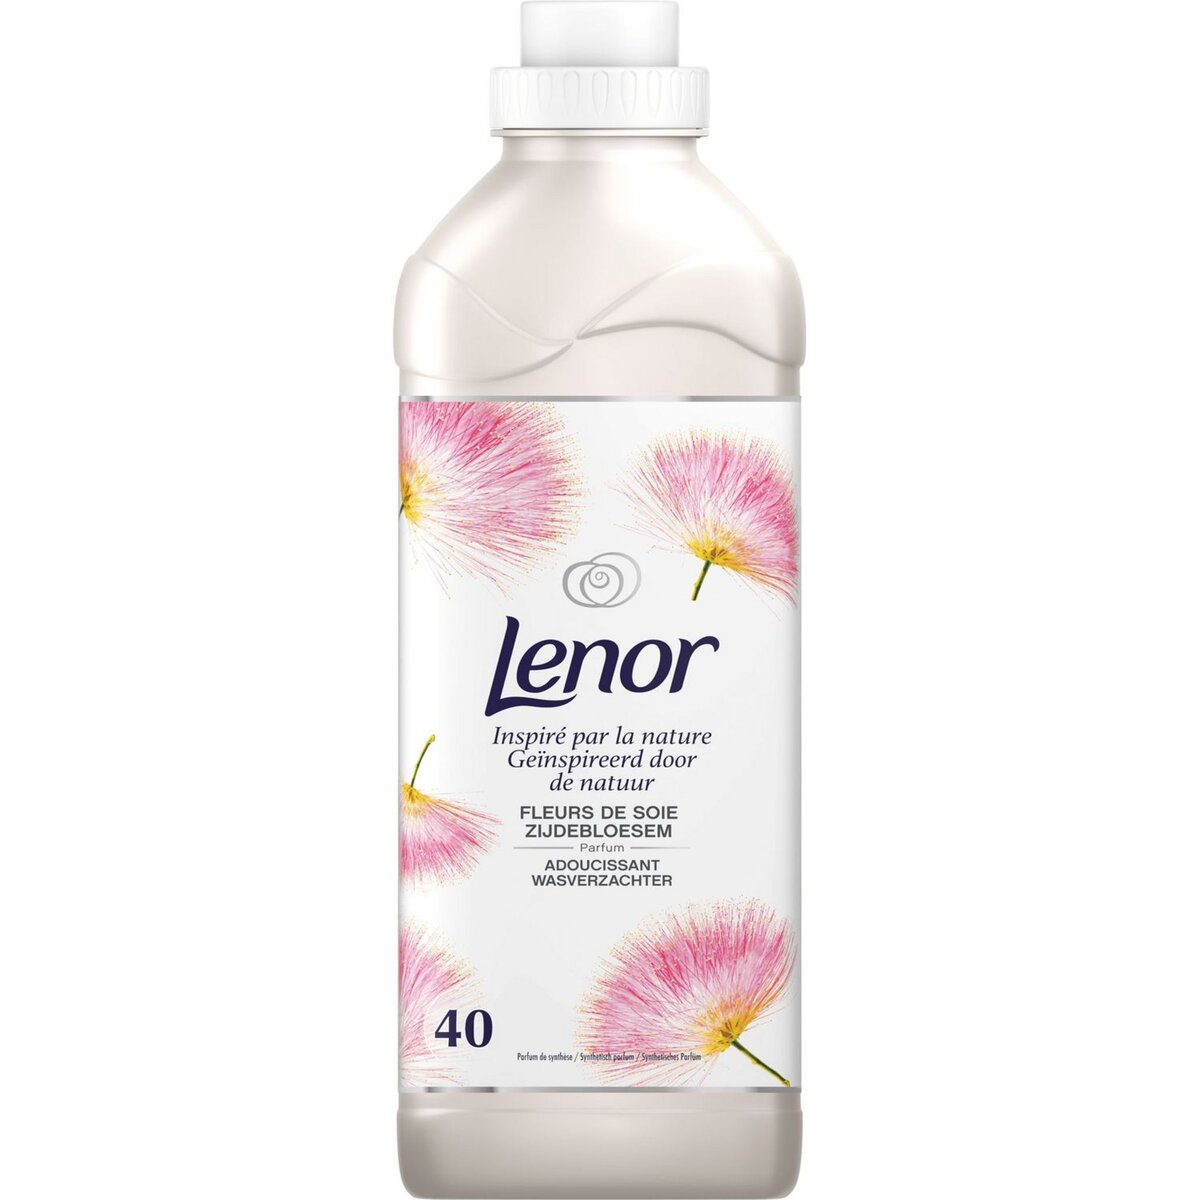 LENOR Lenor Adoucissant inspiré par la nature fleurs de soie 40 lavages 1l 40 lavages 1l